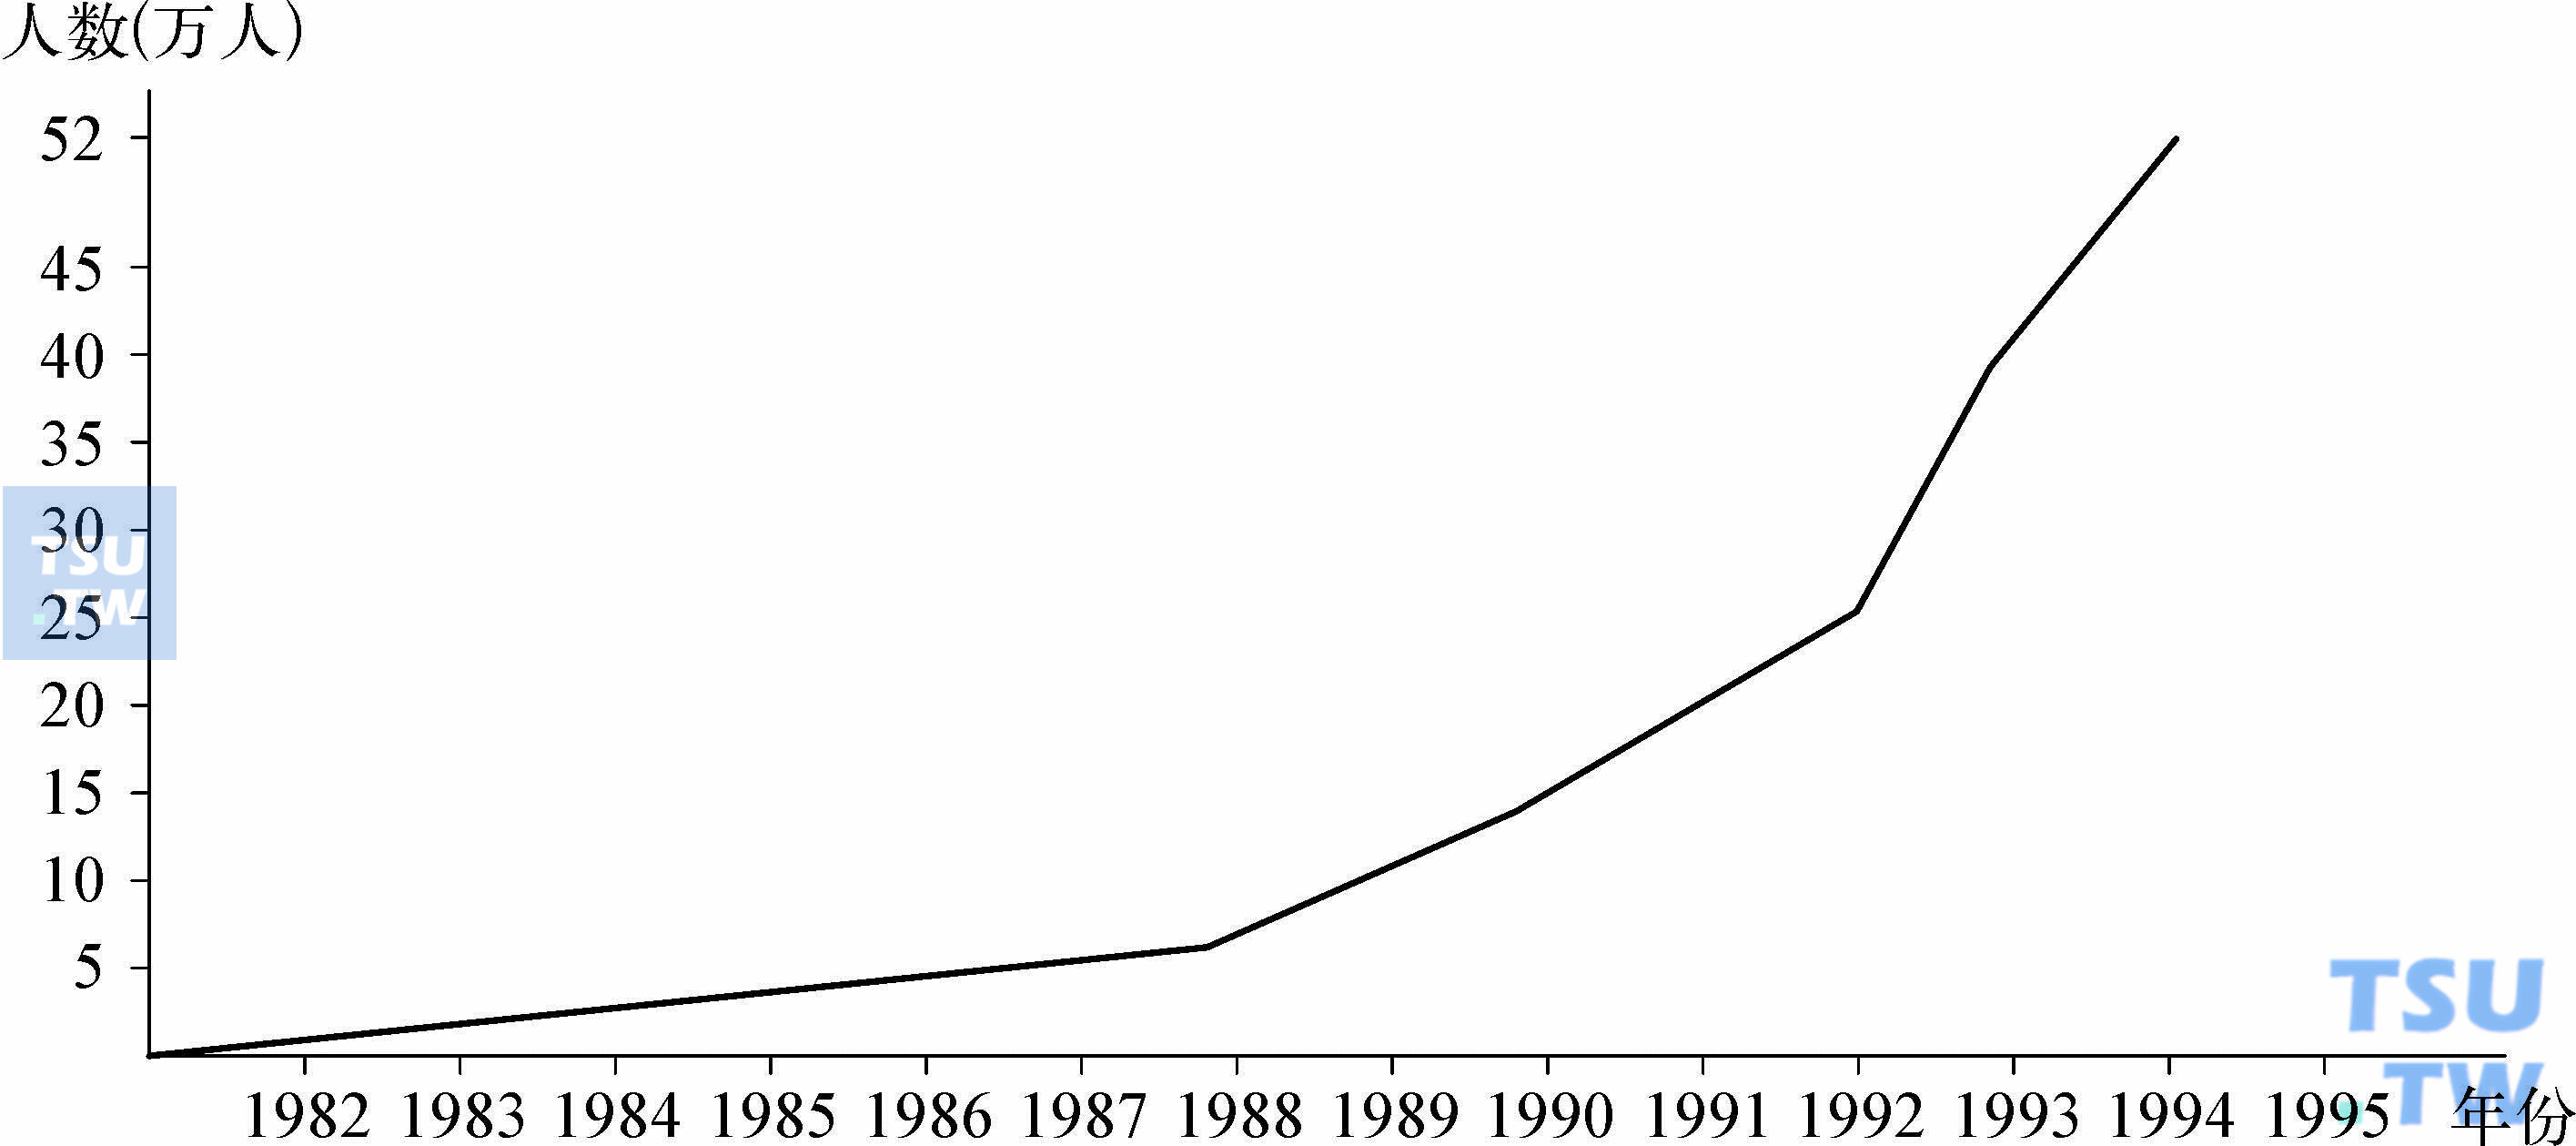 1982—1995年中国吸毒人数示意图